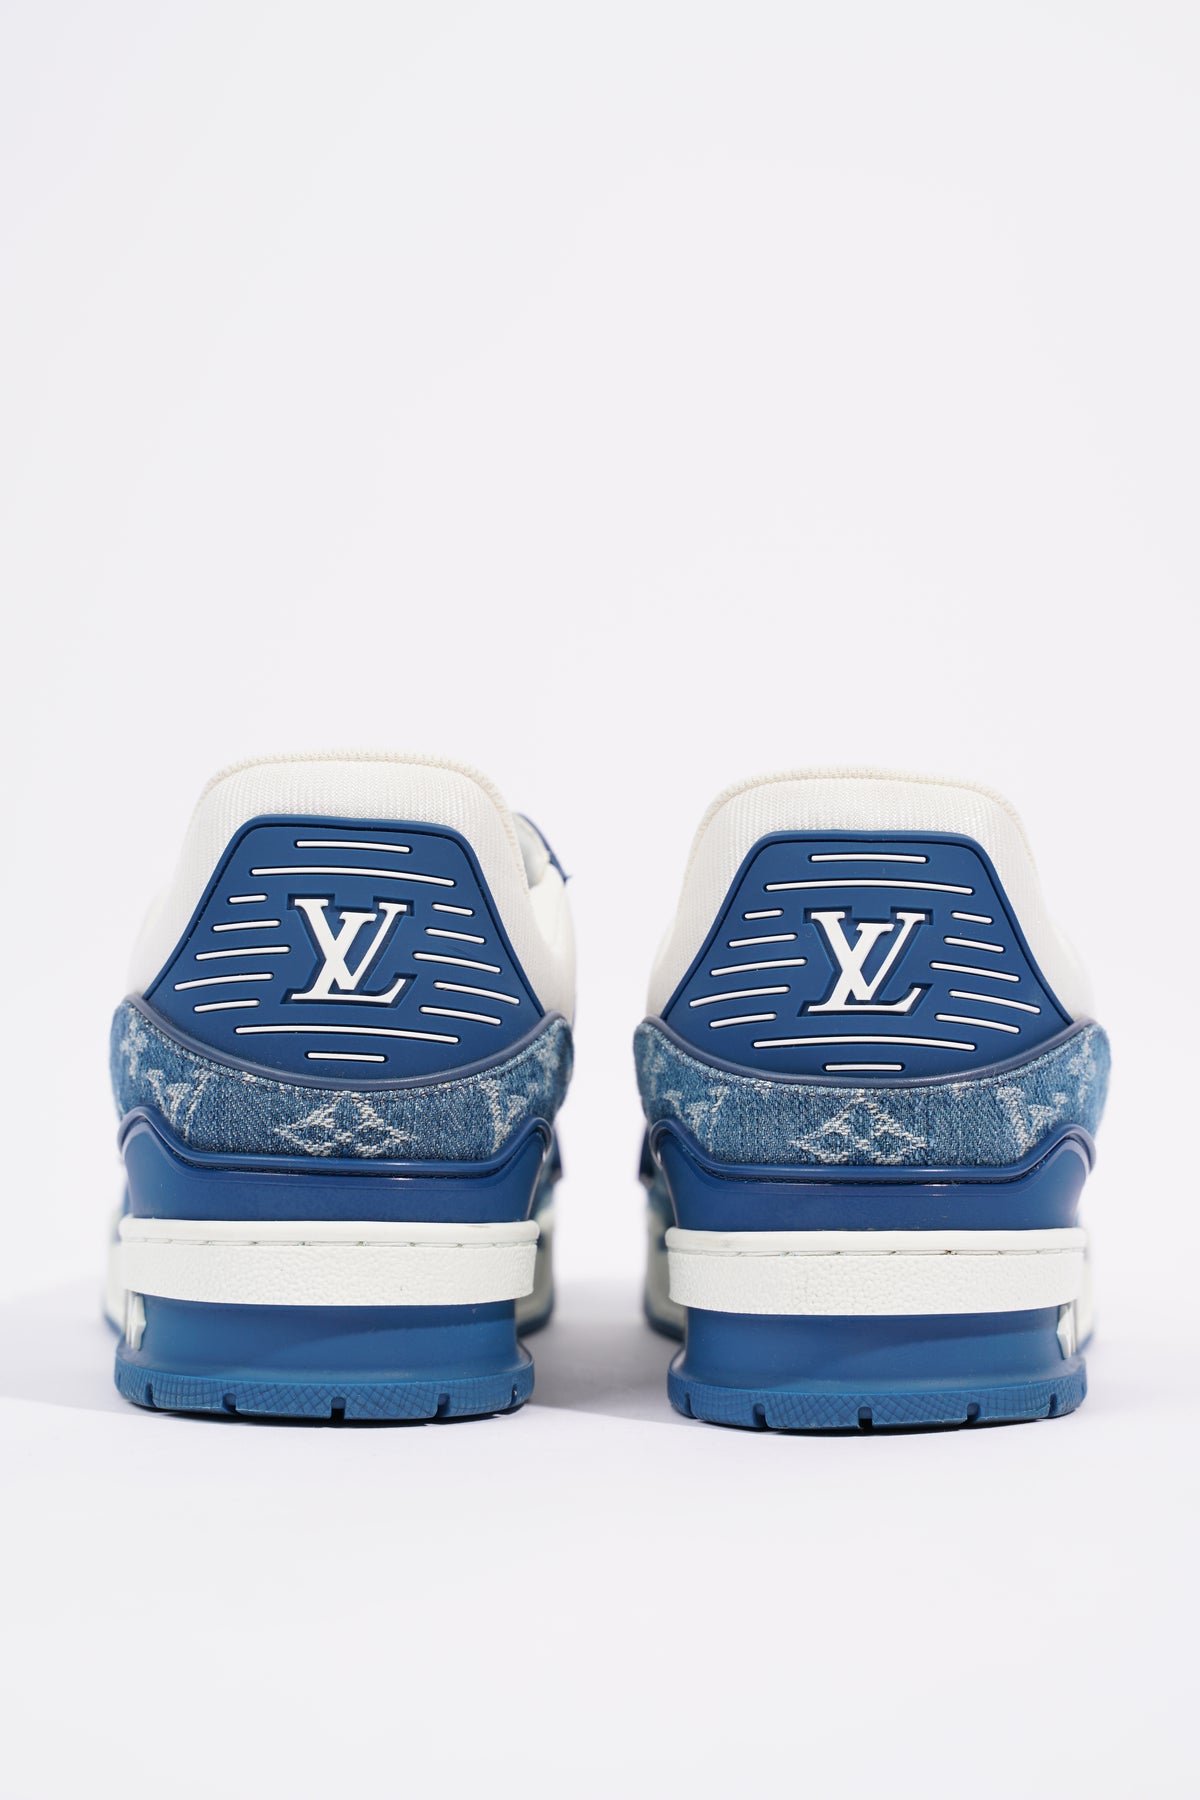 Louis Vuitton Monogram Mens Sneakers, White, 8.5